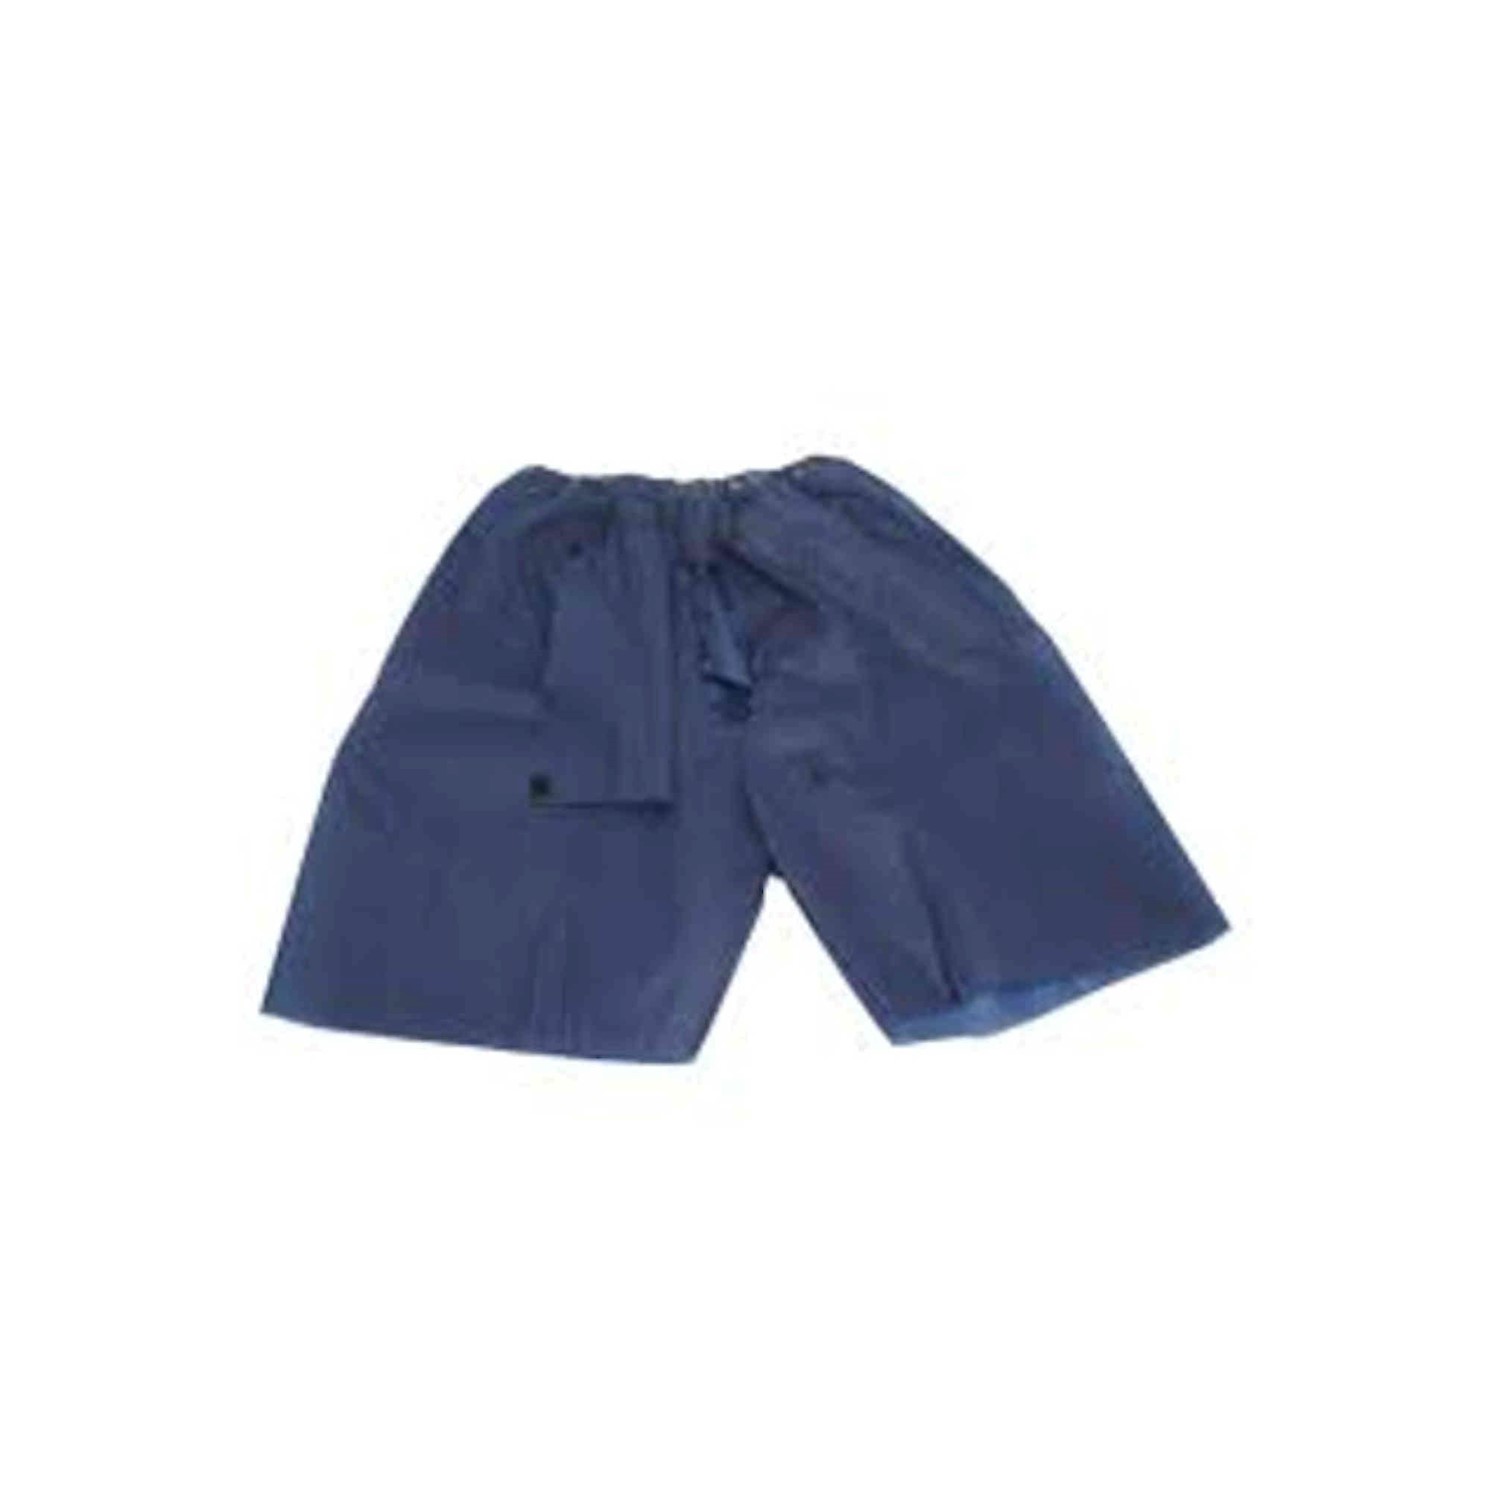 Παντελόνι κολονοσκόπησης με οπή 30 g/m2 μη αποστειρωμένο μπλε χρώματος (50άδα)